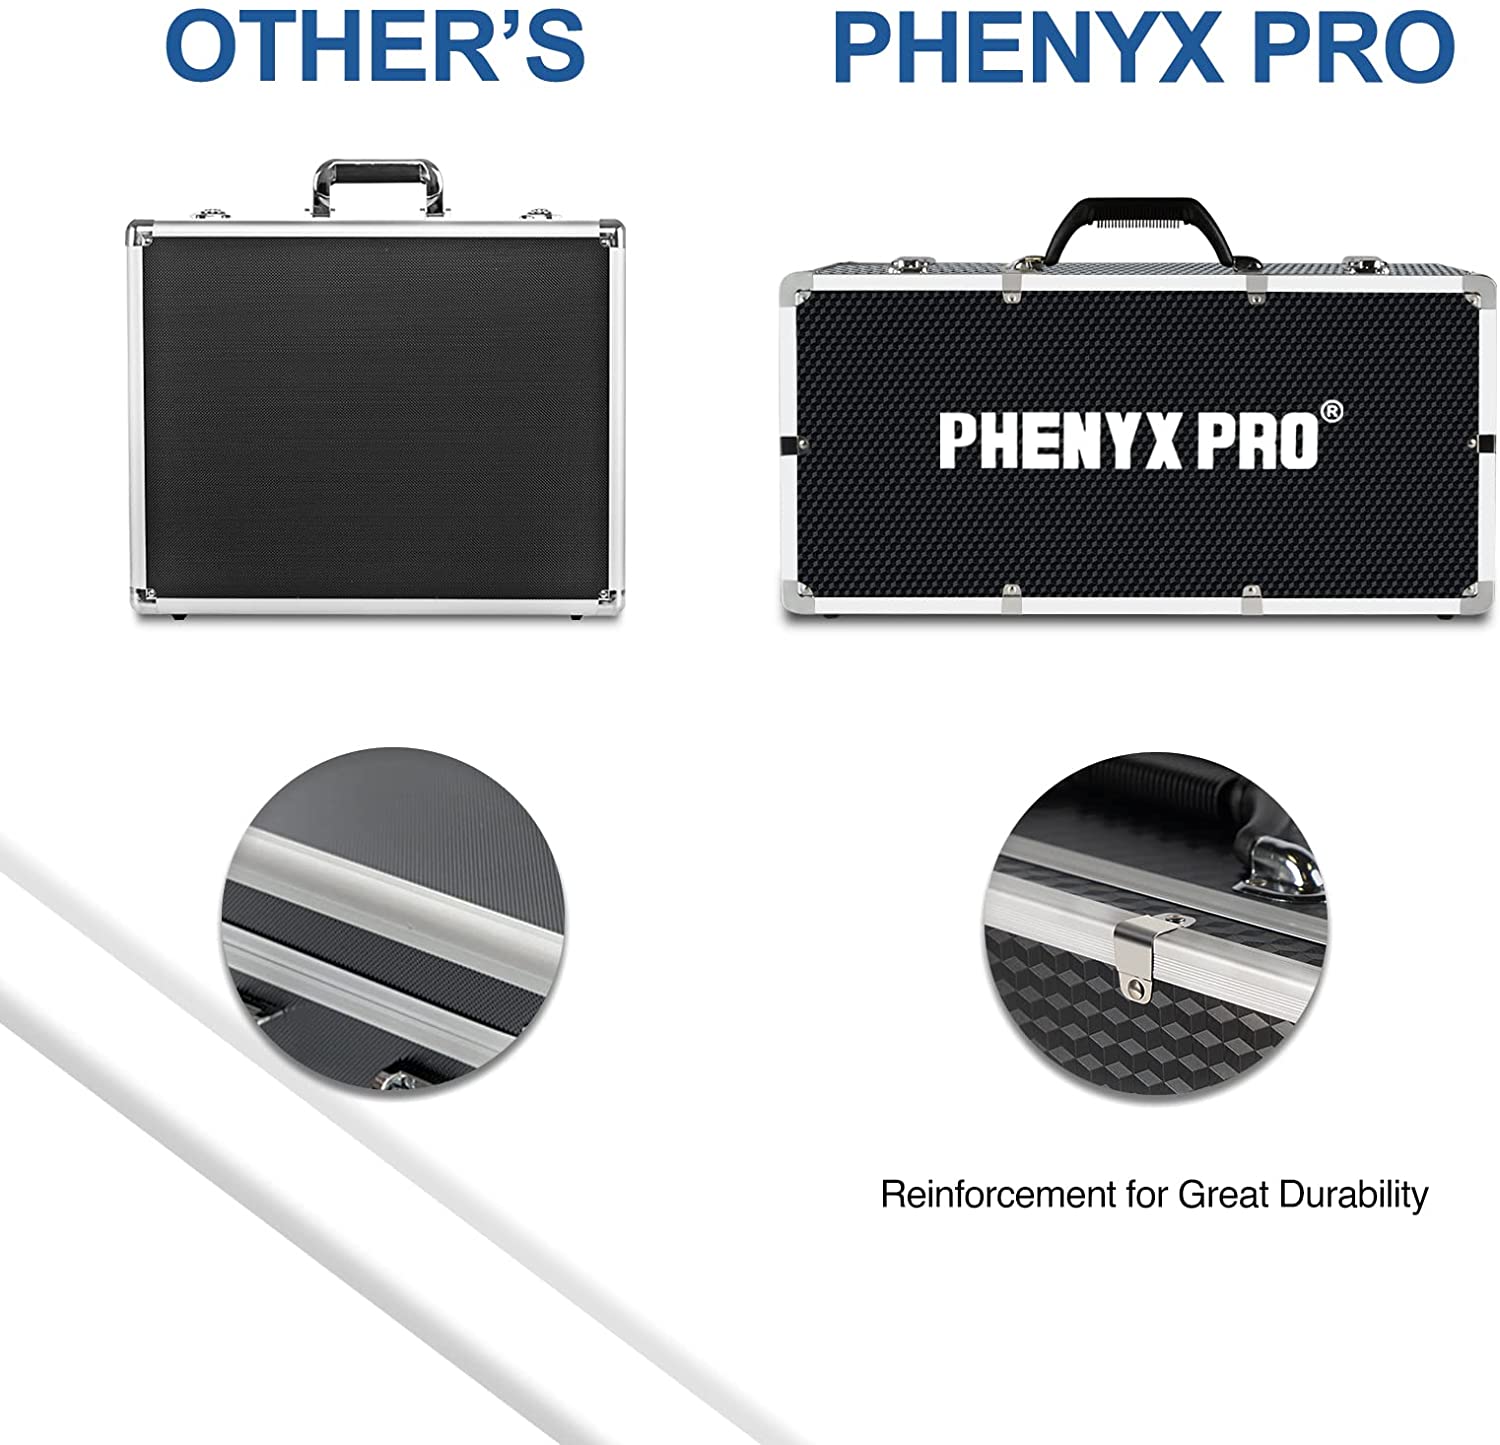 Phenyx Pro Carrying Case (Large Size)